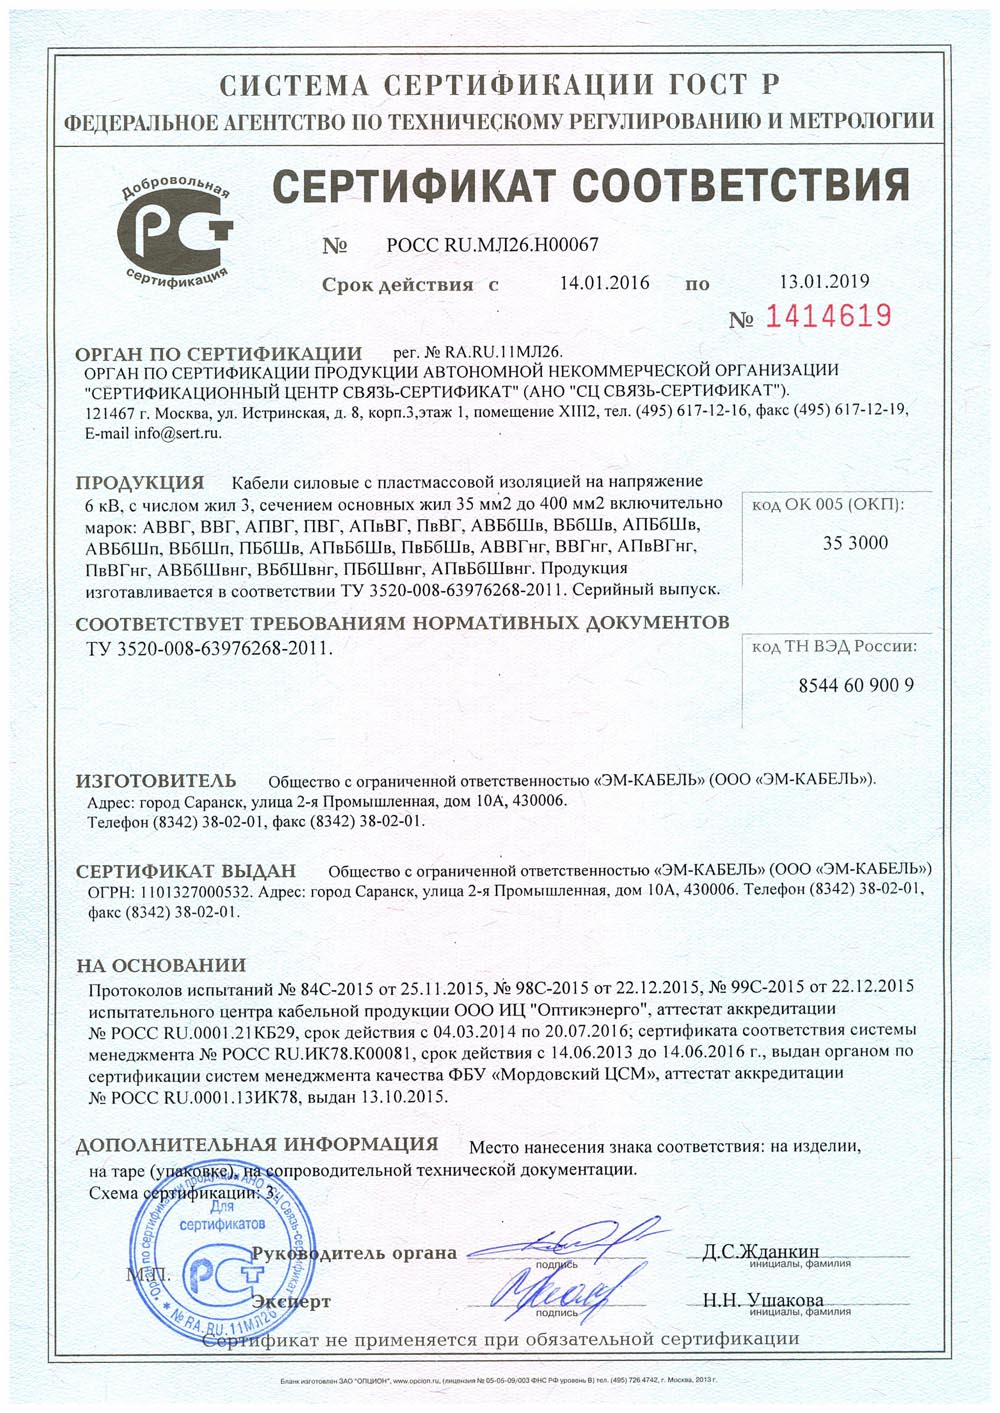 Сертификат соответствия кабелей ВББШВНГ на напряжение 6 кВ, с числом жил 3